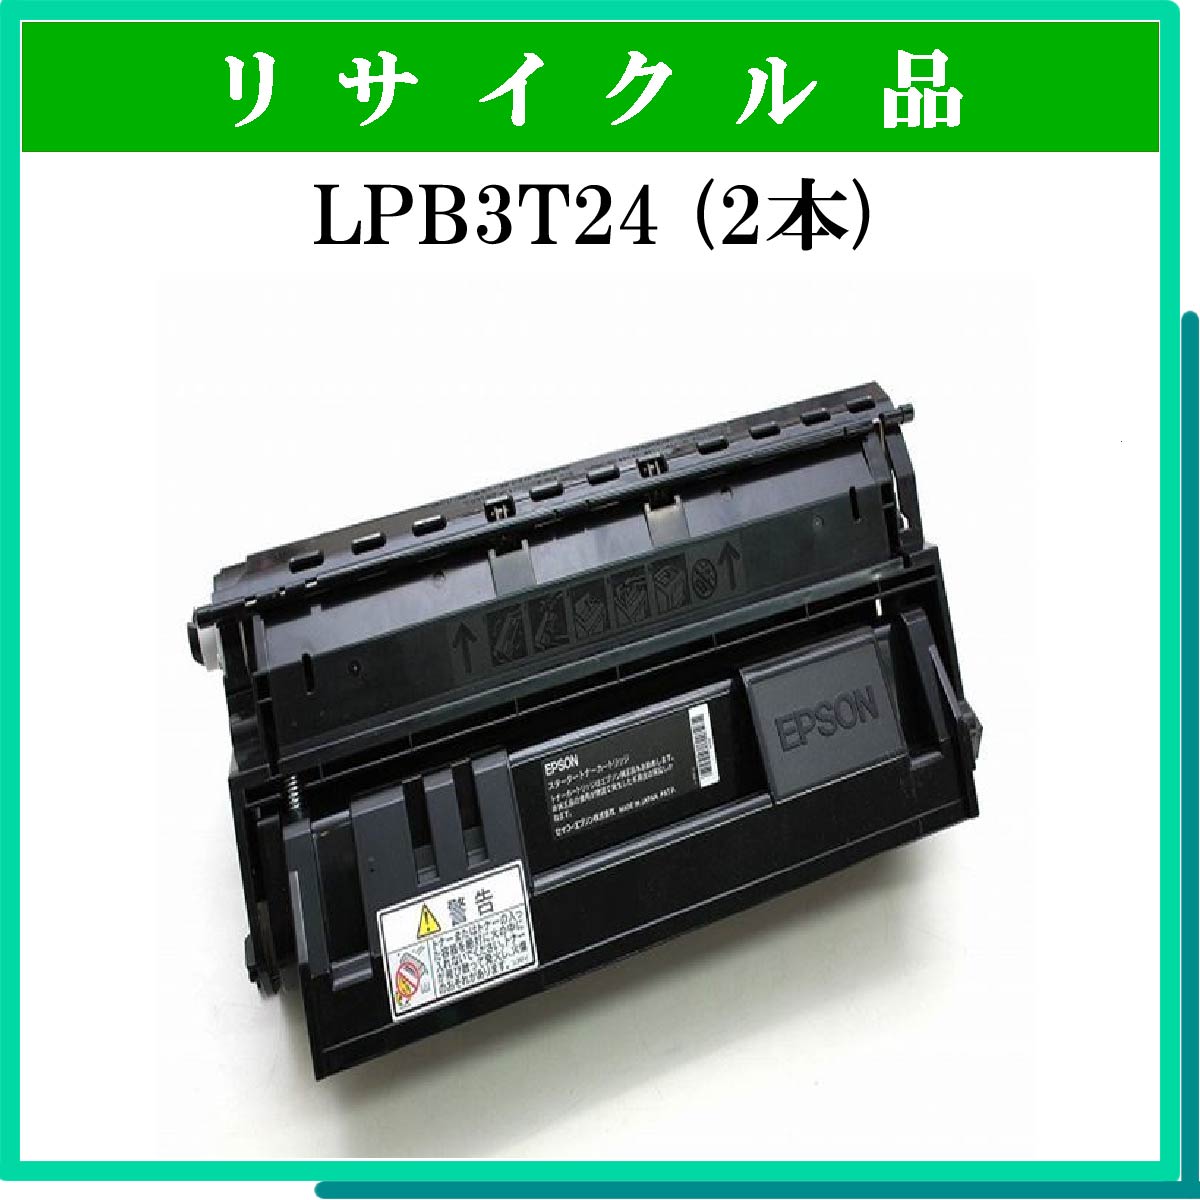 EPSON LPB3T24 ETカートリッジ 純正品 2本セット - 2